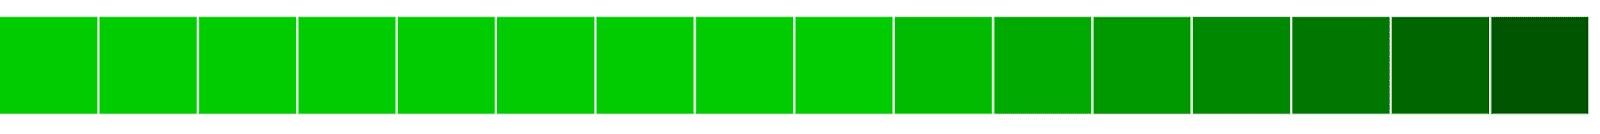 Alineación horizontal de bloques verdes que van de claro a oscuro